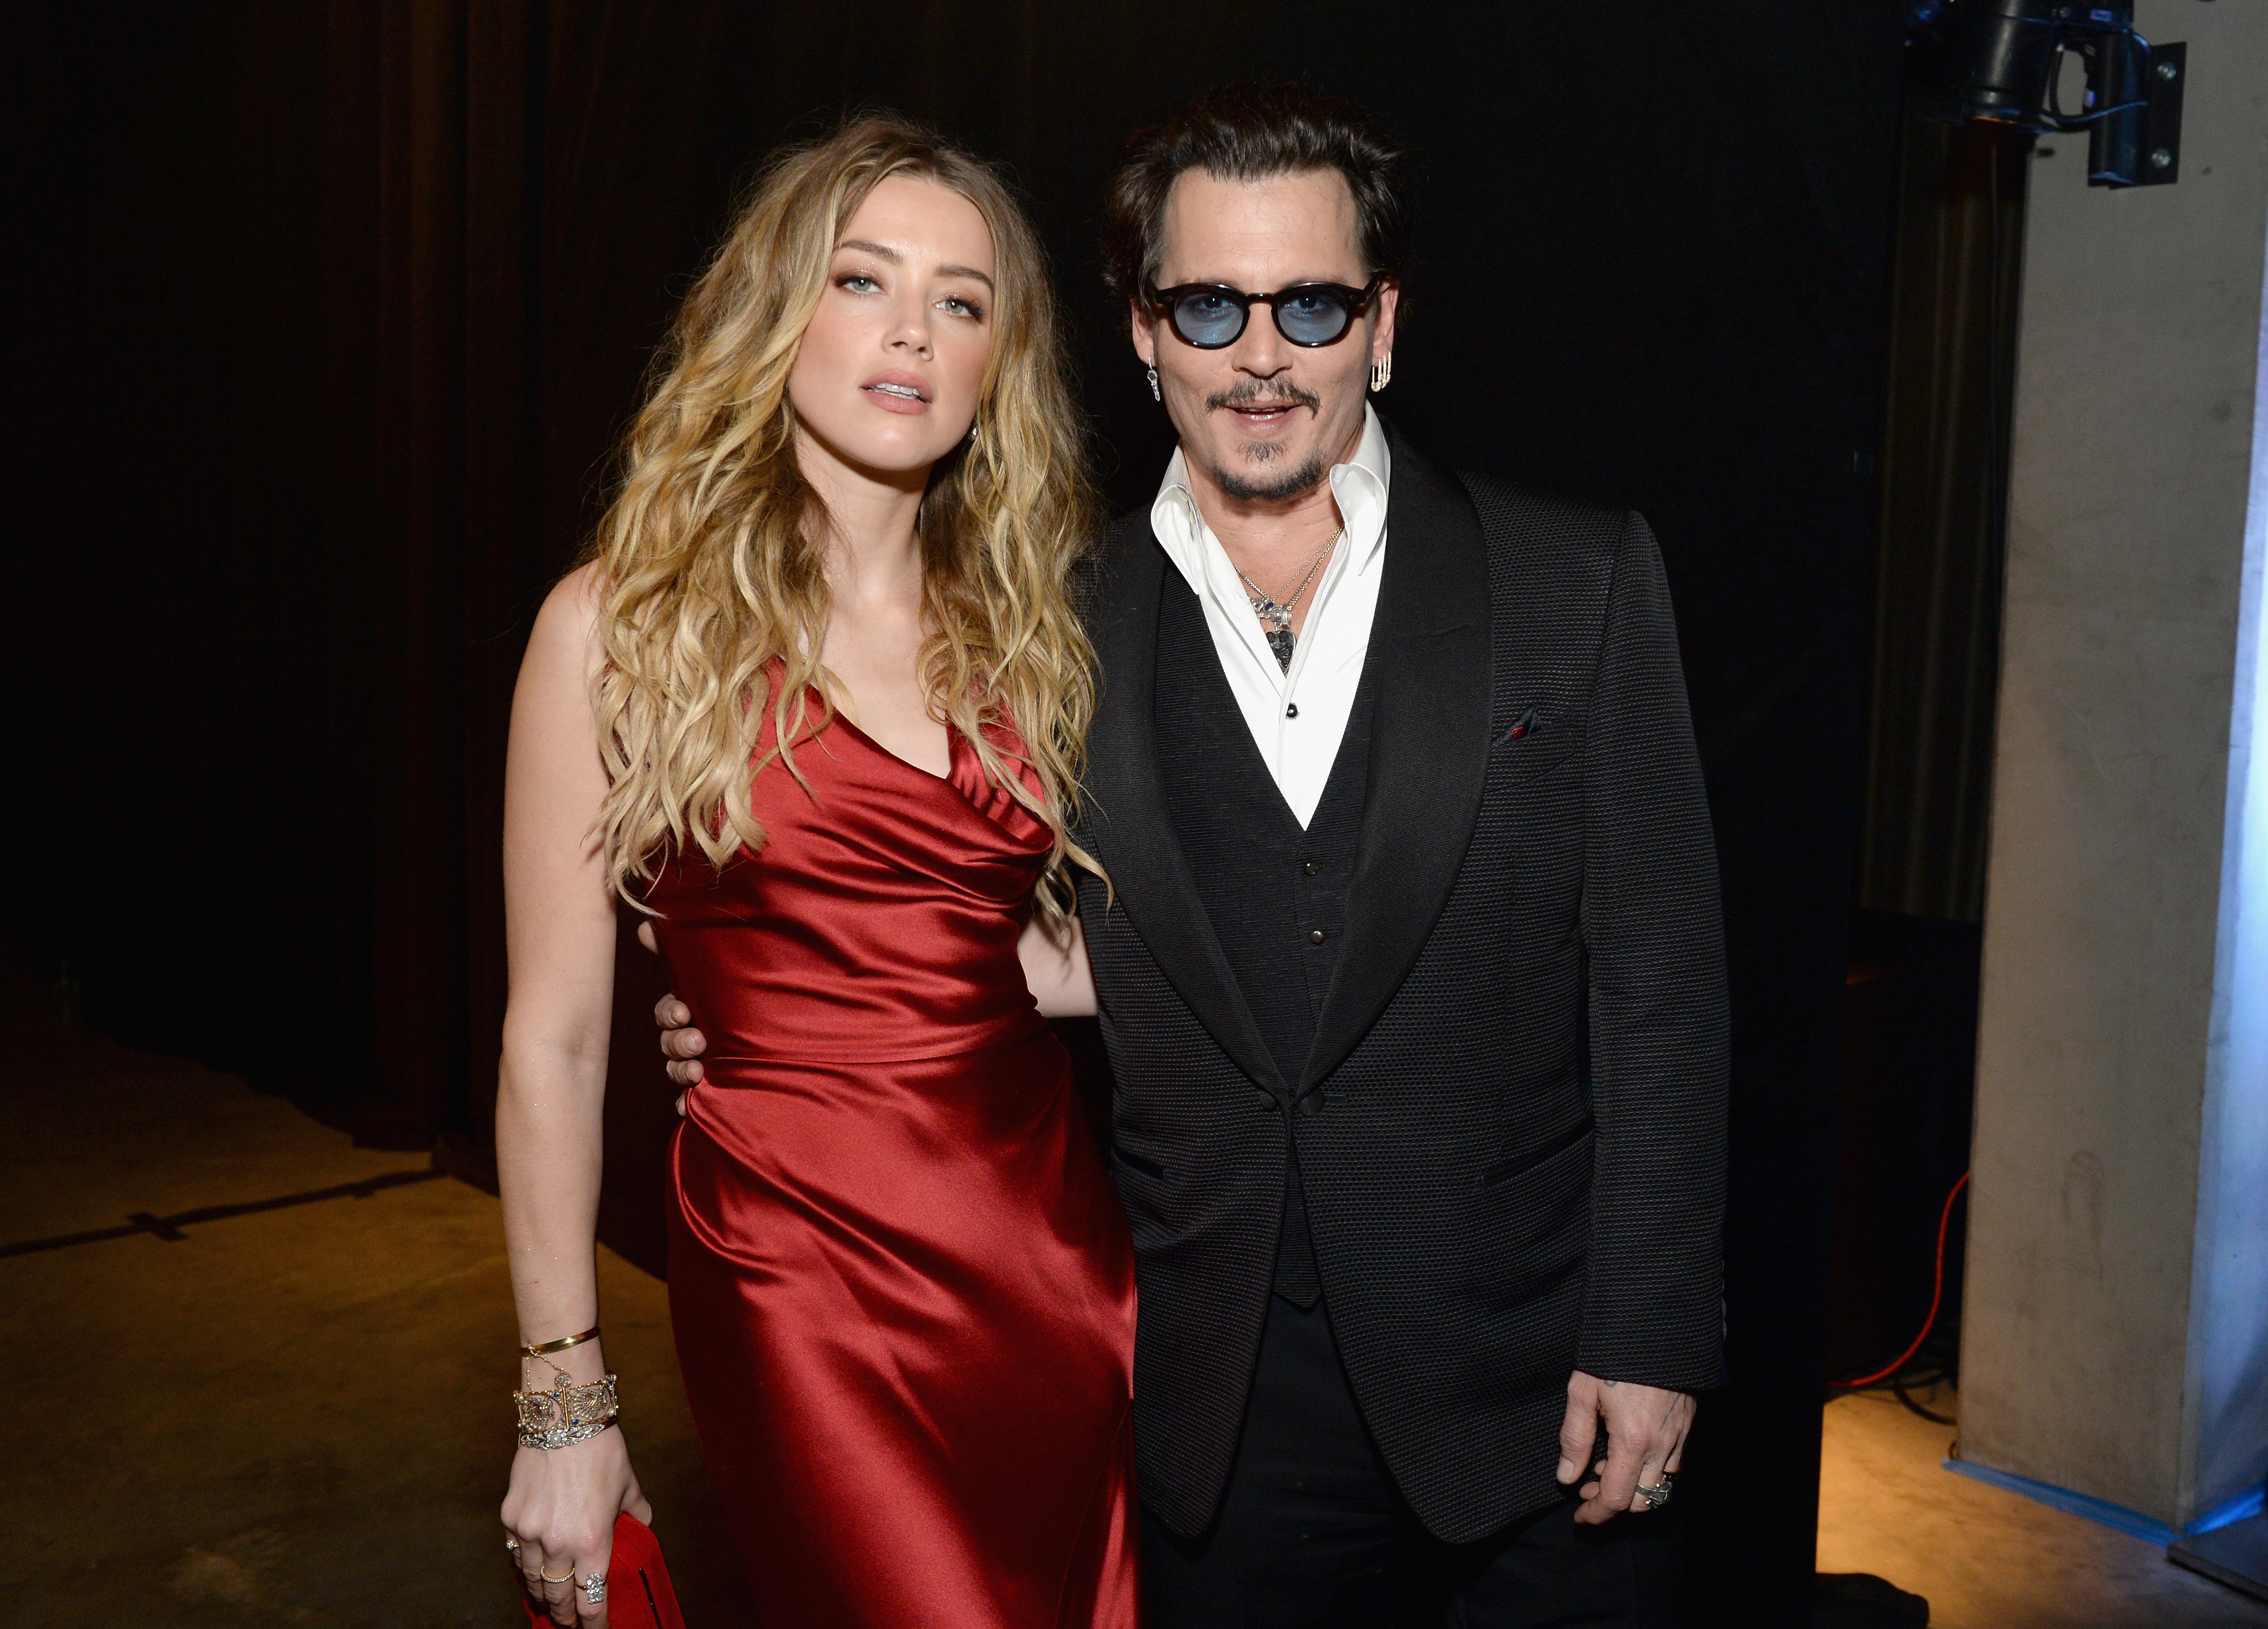 Documentário sobre julgamento de Johnny Depp e Amber Heard será